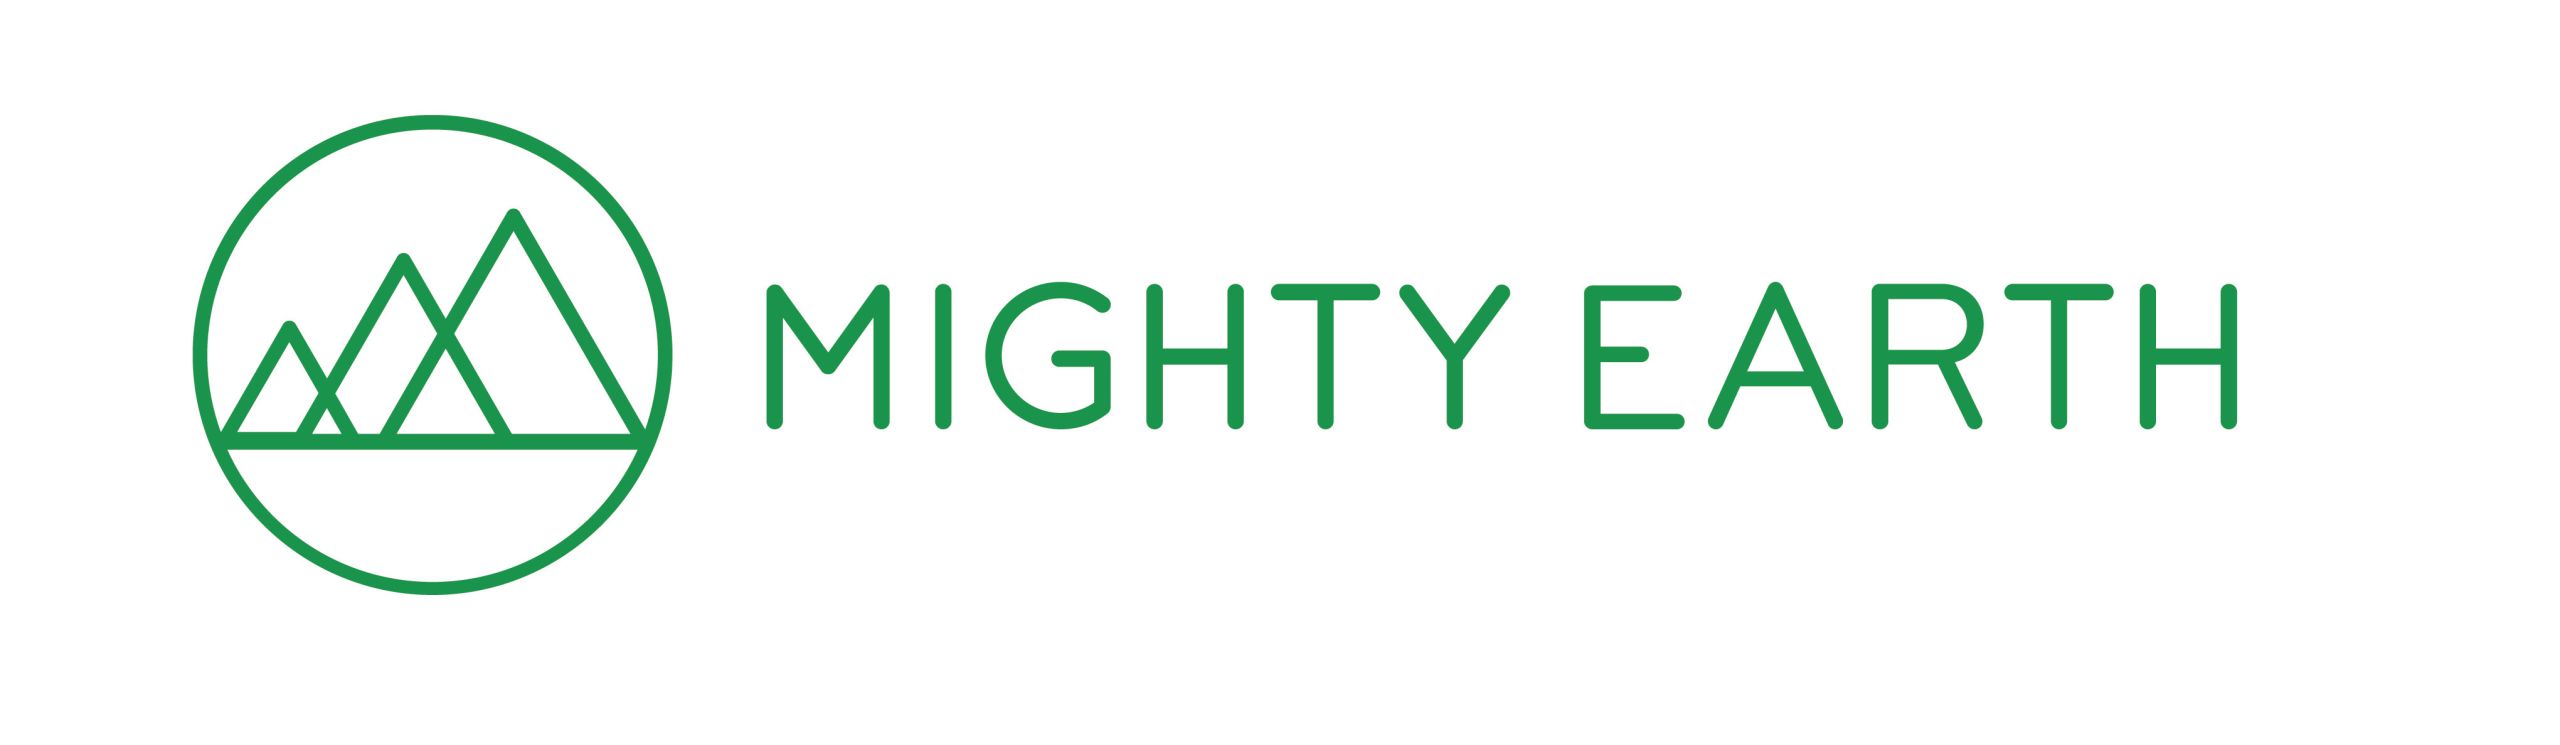 Mighty Earth logo